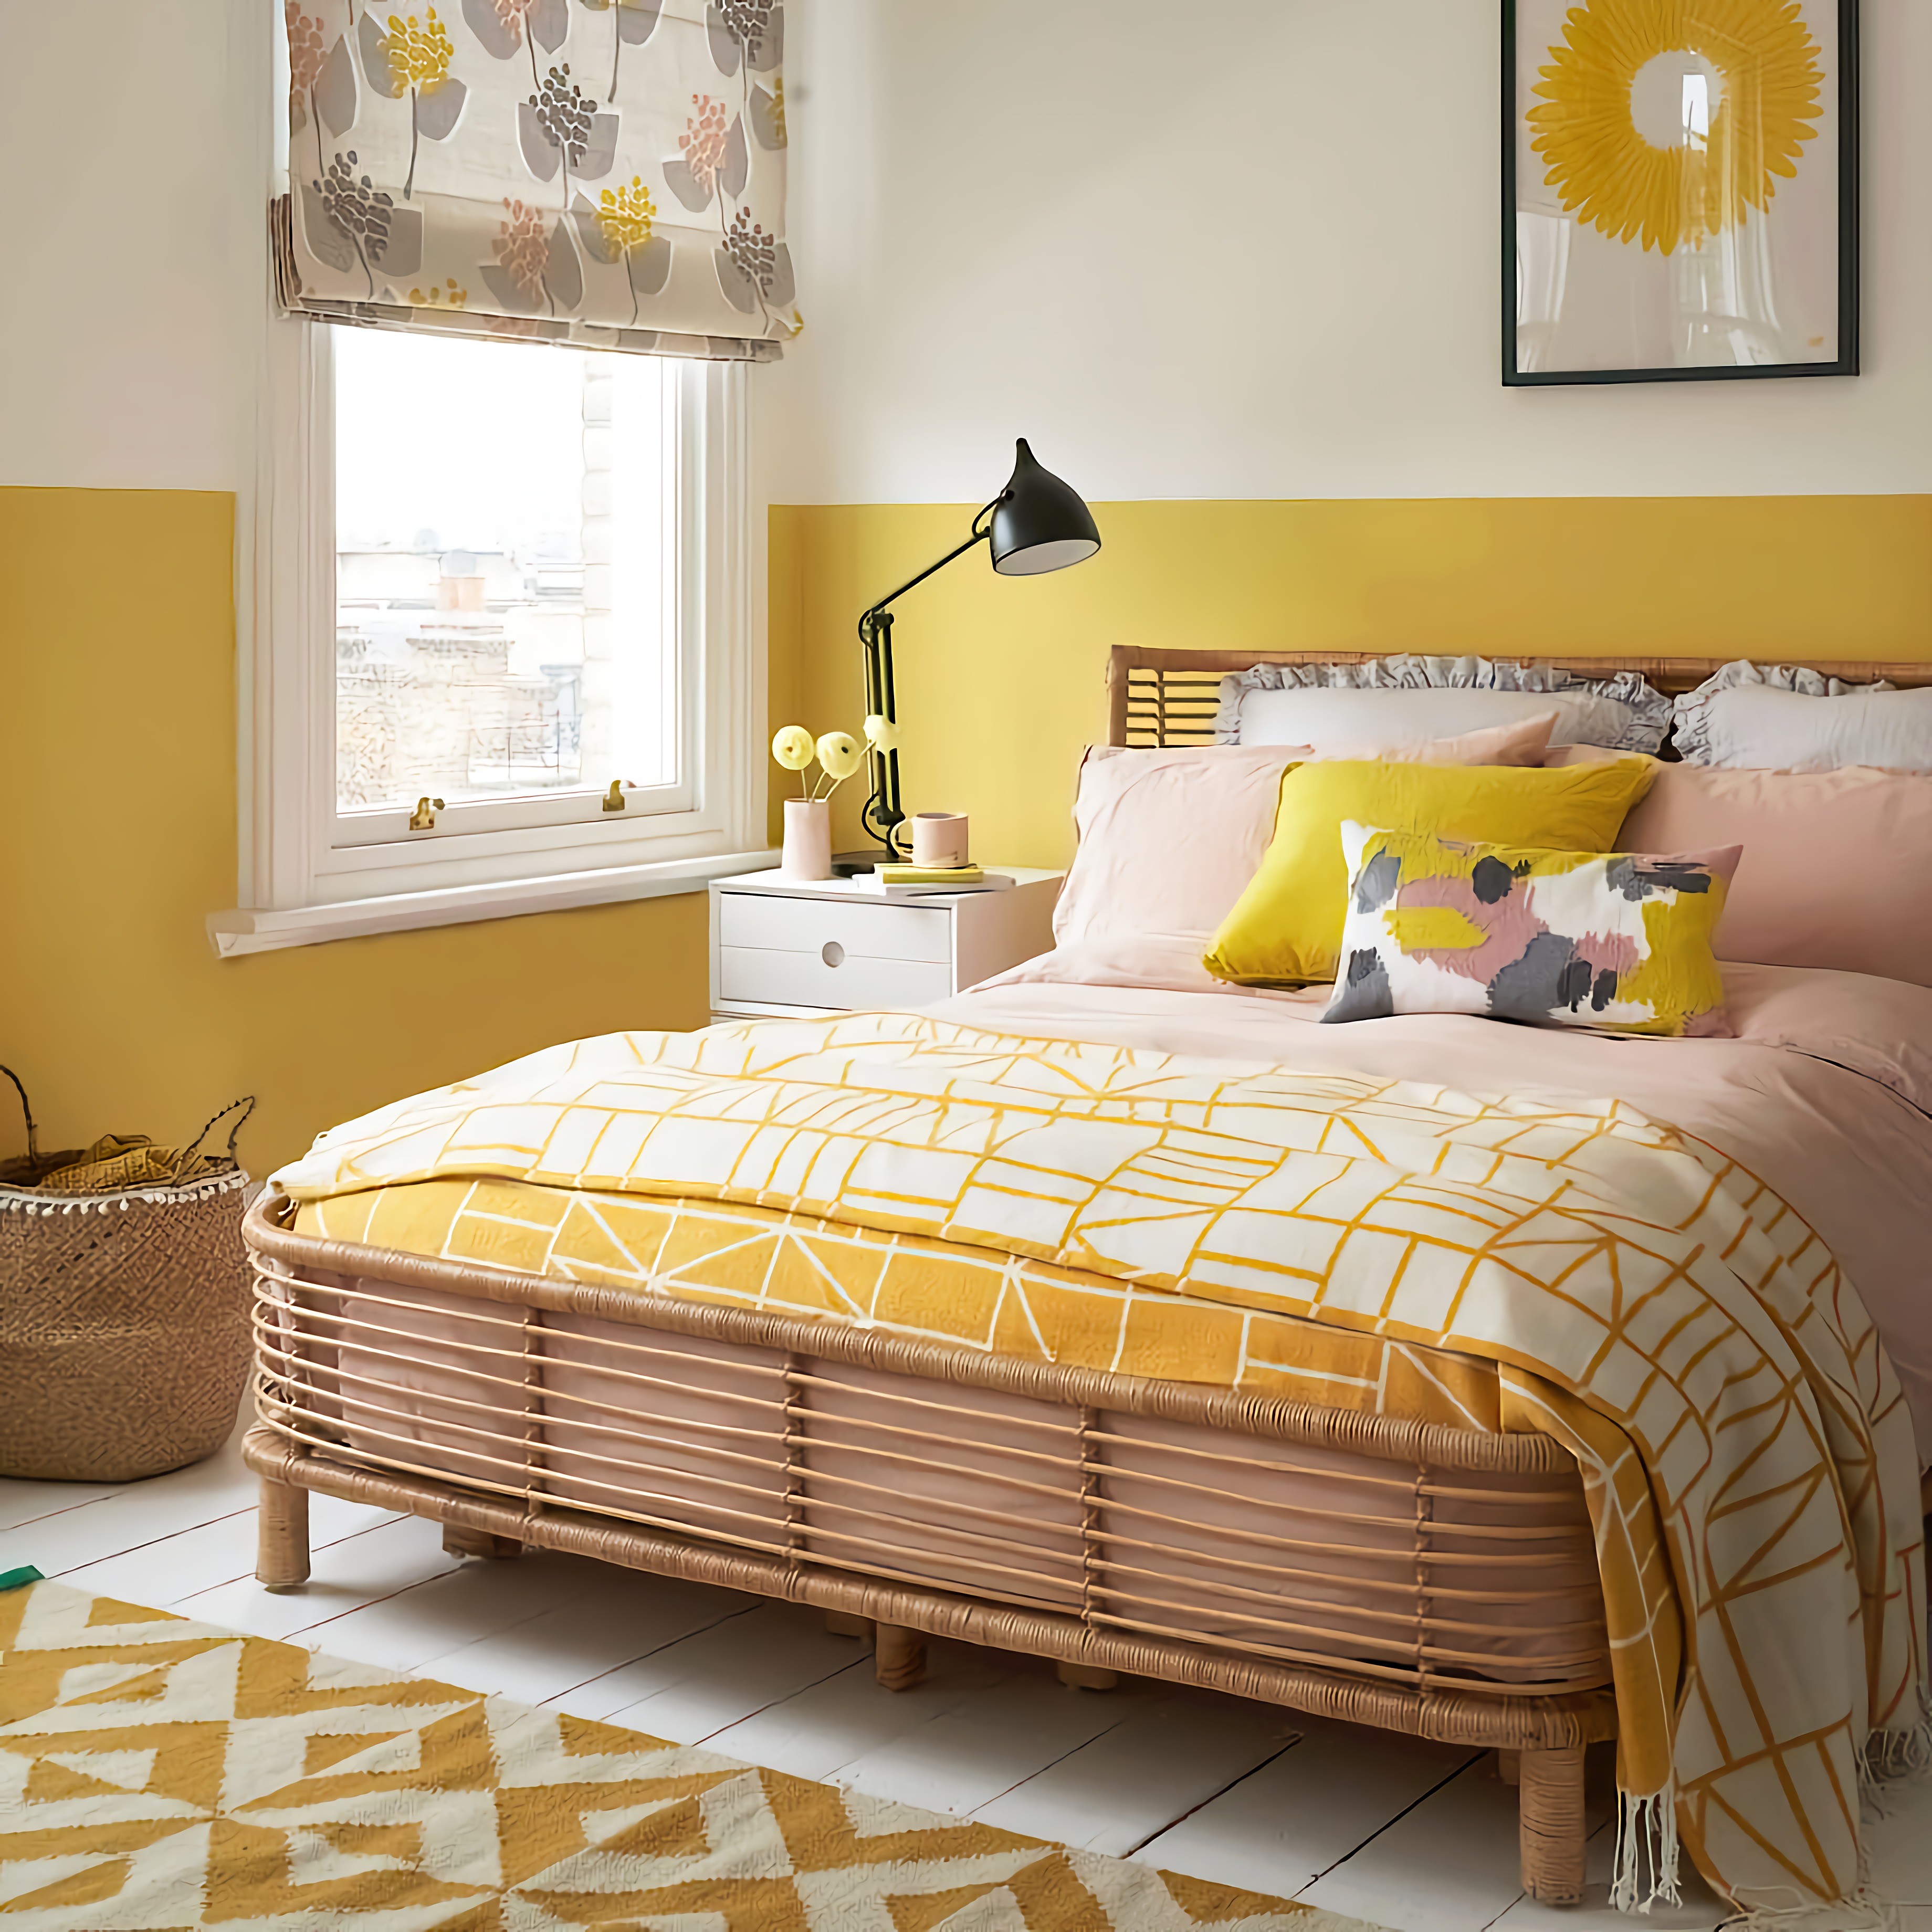 Мебель желтого цвета в спальне